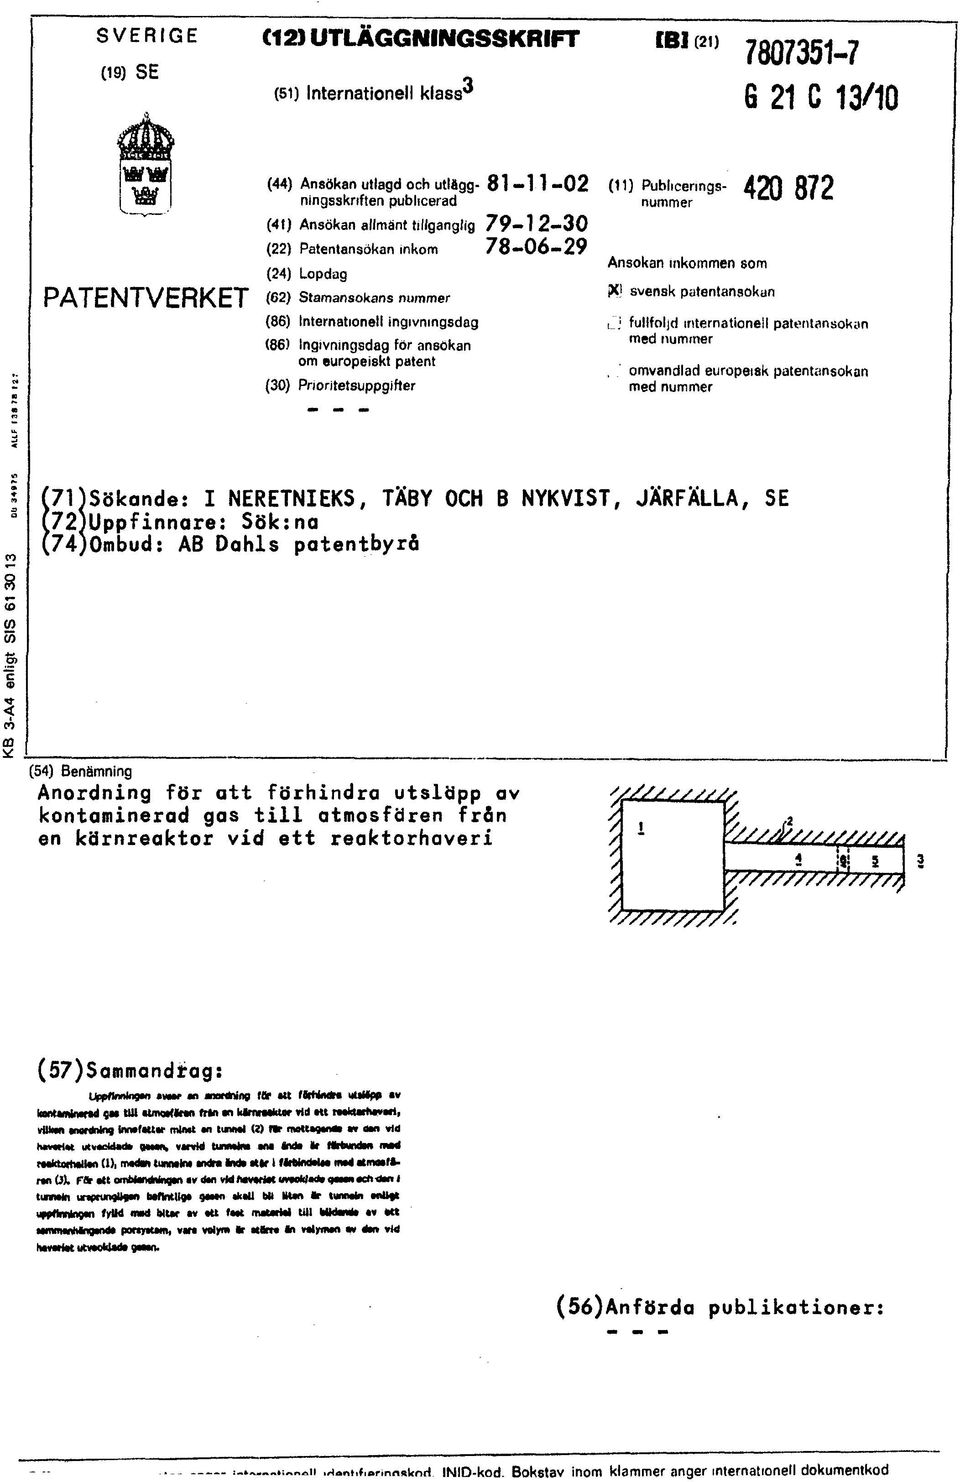 Prioritetsuppgifter (11) Publicerings- A O f ) 8 7 2 nummer Ansökan inkommen som PCJ svensk patentansokun L'j fullföljd internationell patentansokan med nummer omvandlad europeisk patentansokan med